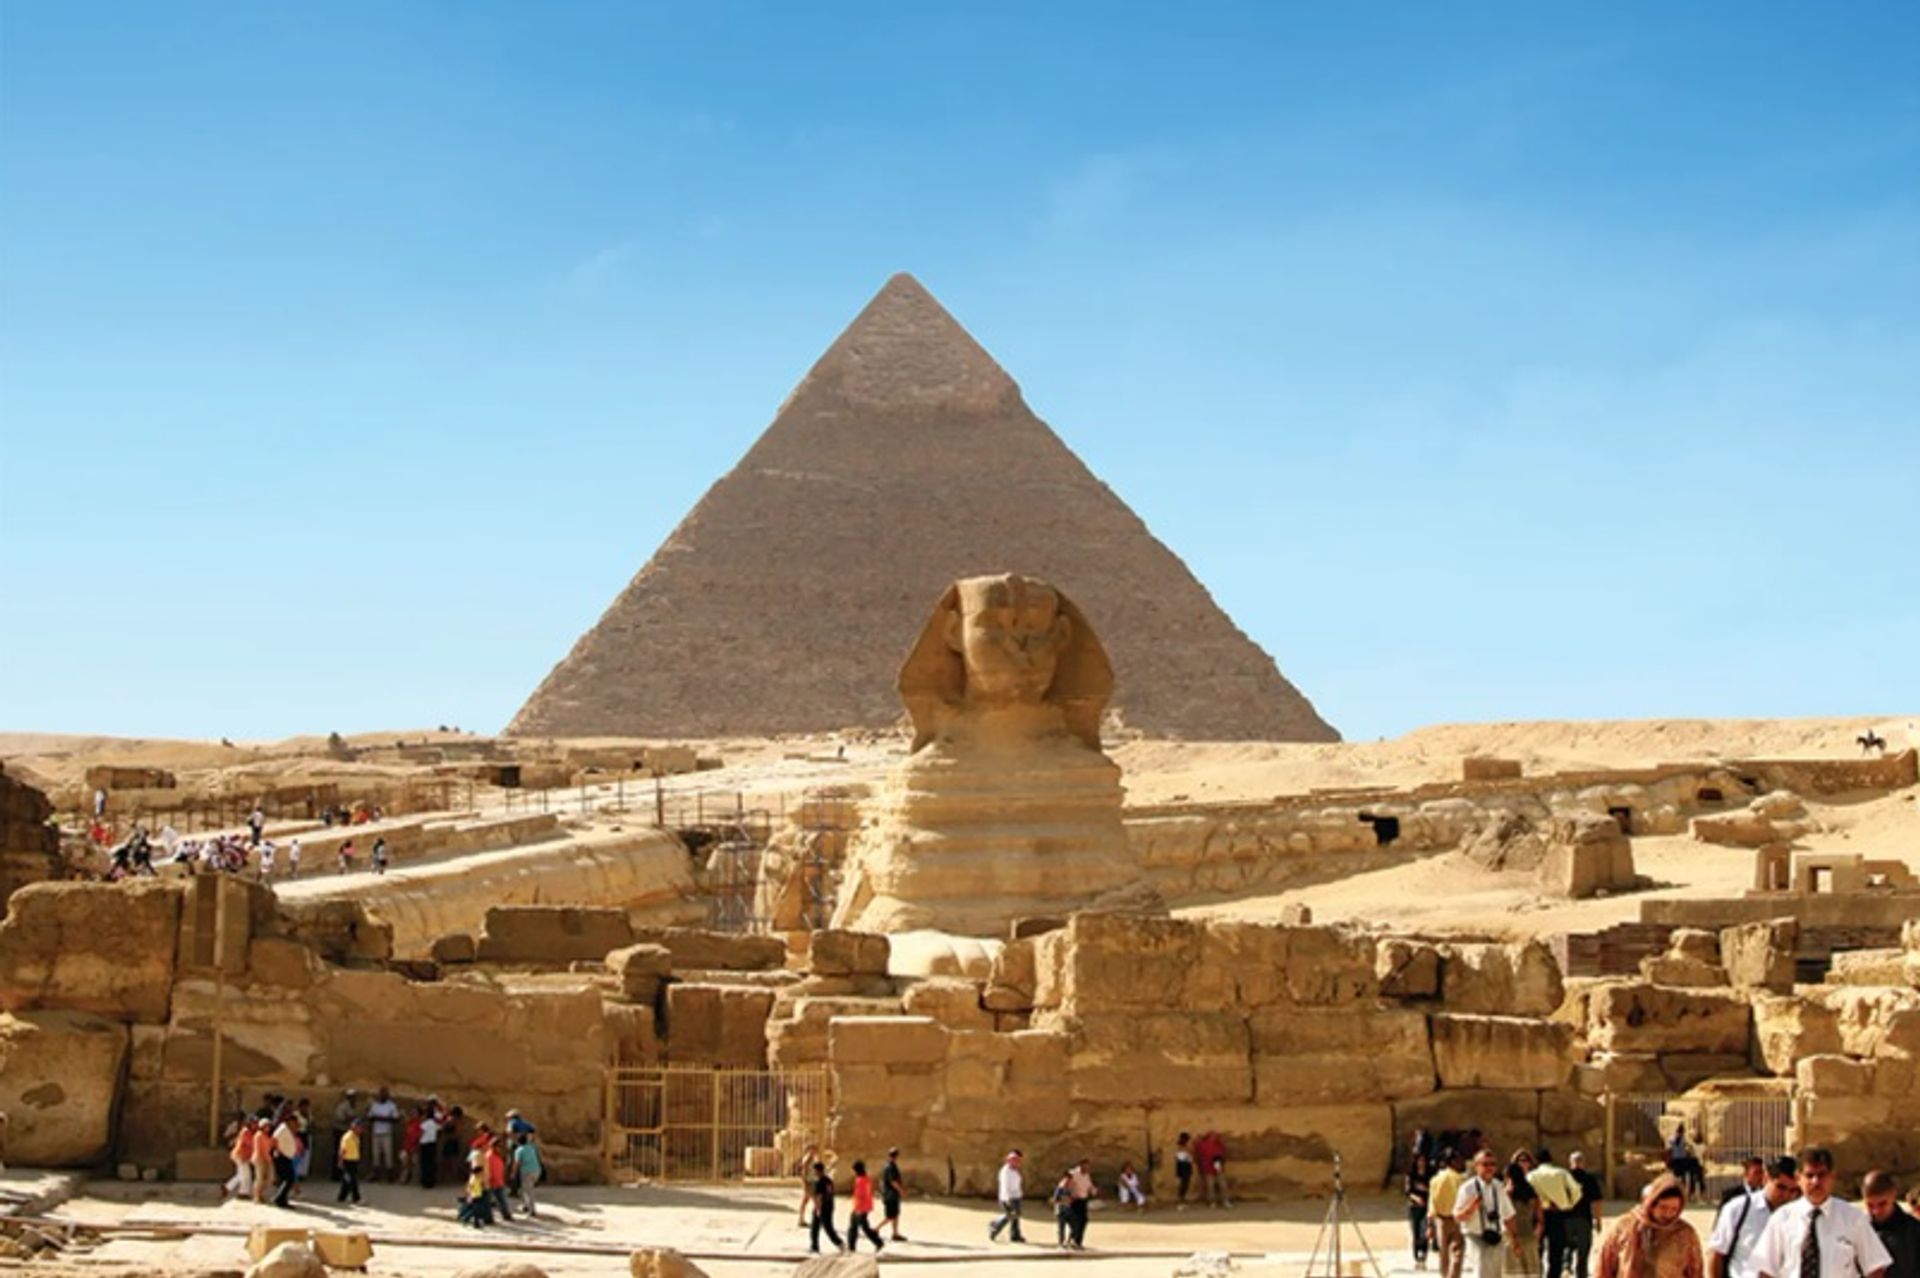 יעלם מחר? שר העתיקות לשעבר של מצרים אומר ששינויי האקלים עלולים למחוק אתרים מרכזיים בעוד מאה שנה

צילום: דניאל פלק